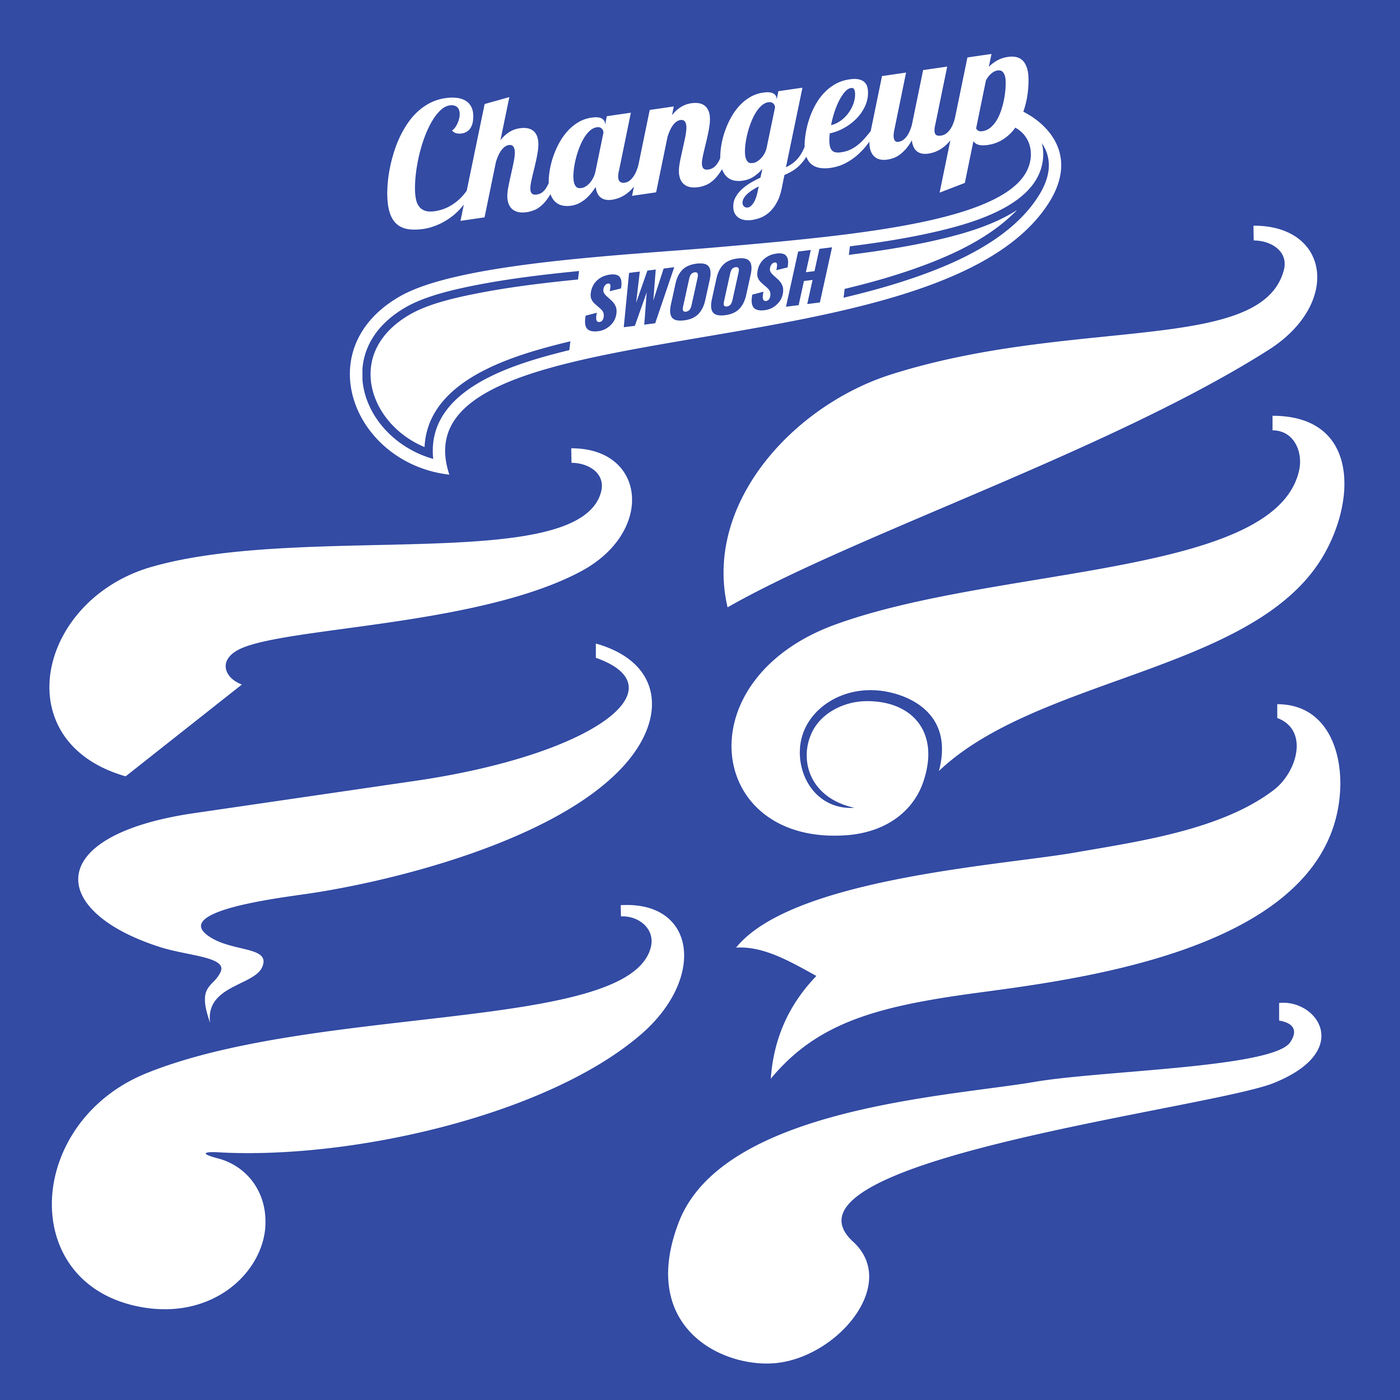 Download Vintage swash baseball logo tails vector set By ...